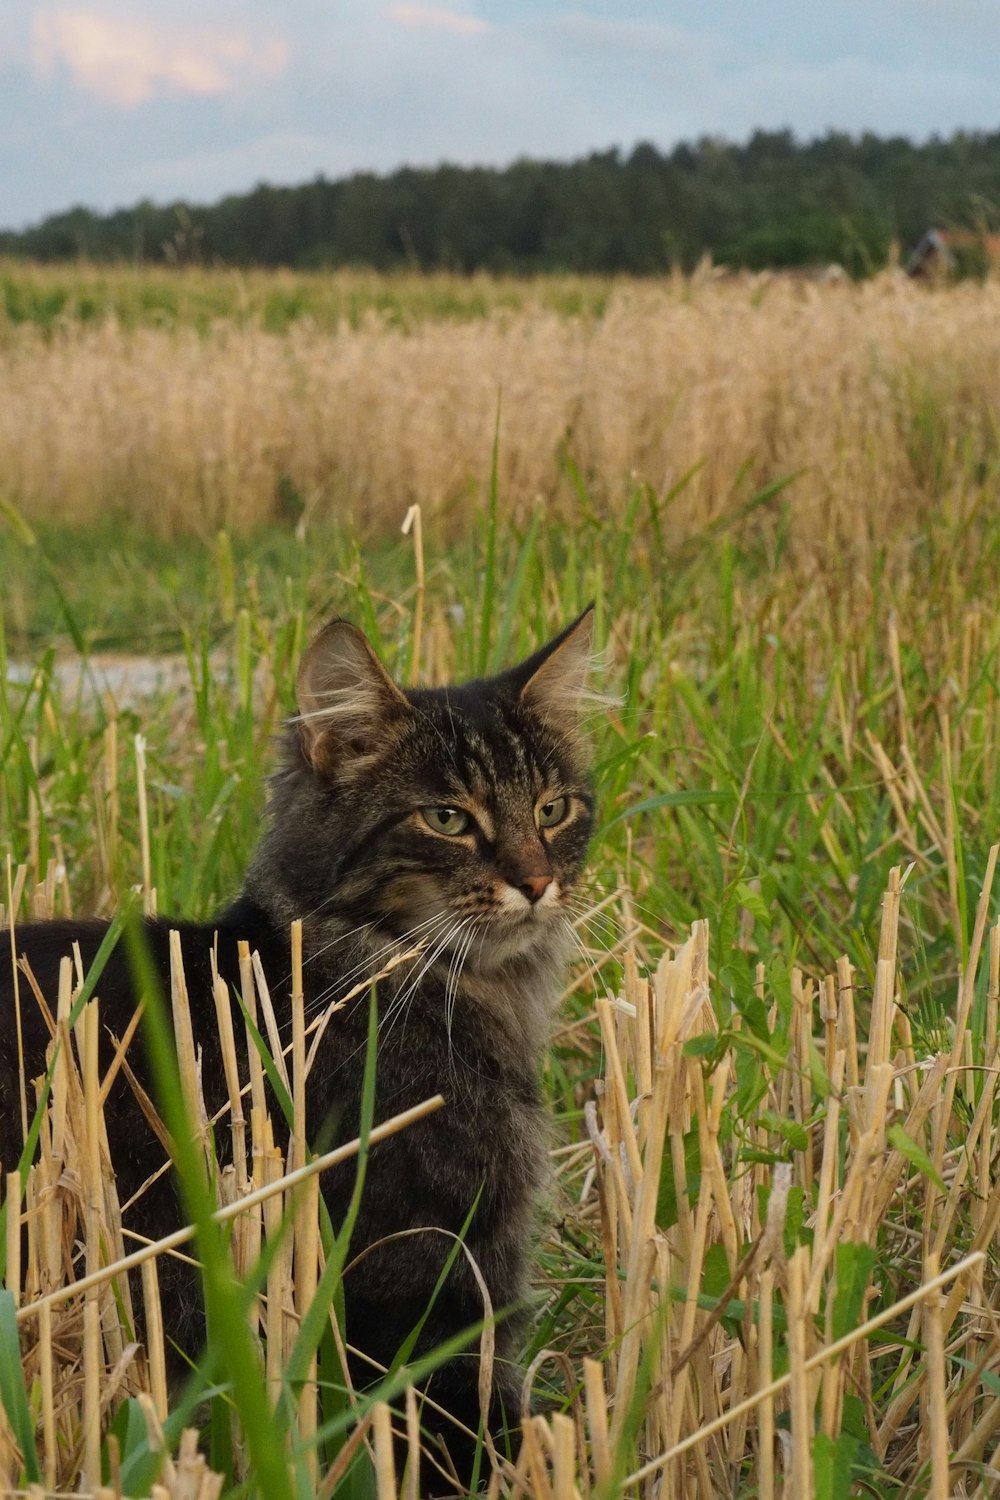 a cat sitting in a field